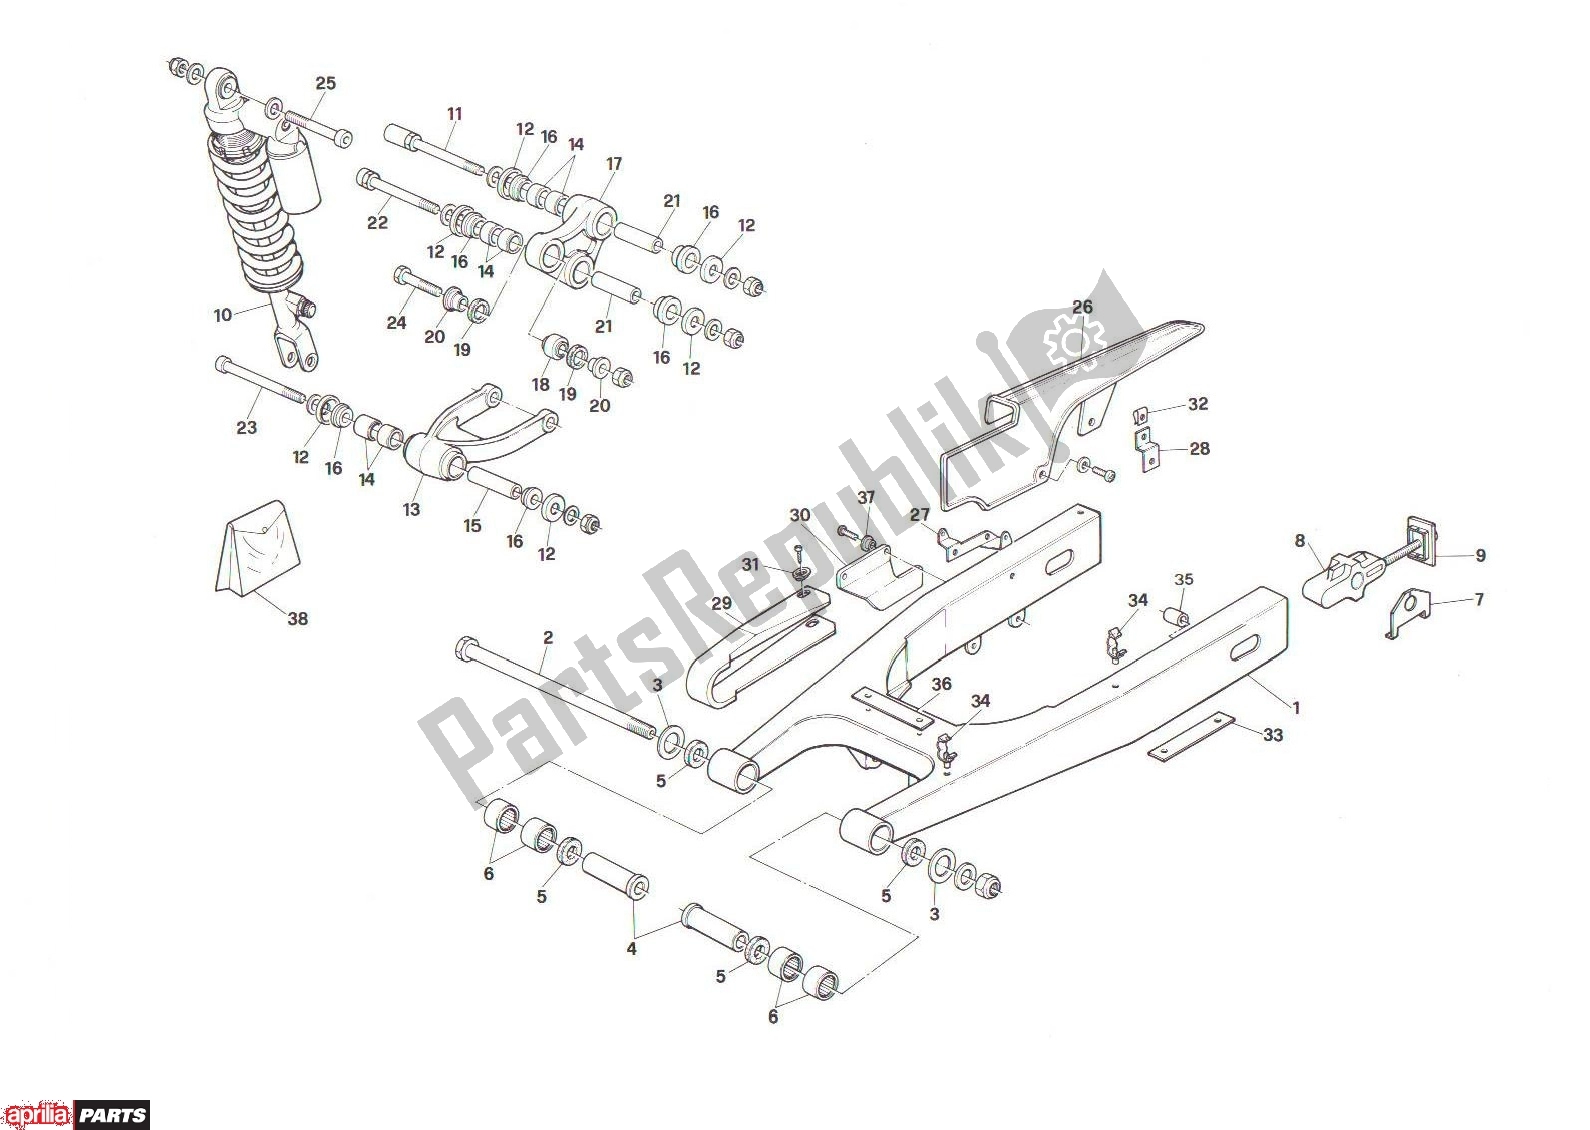 Todas las partes para Rear Swing de Aprilia RX 101 125 1989